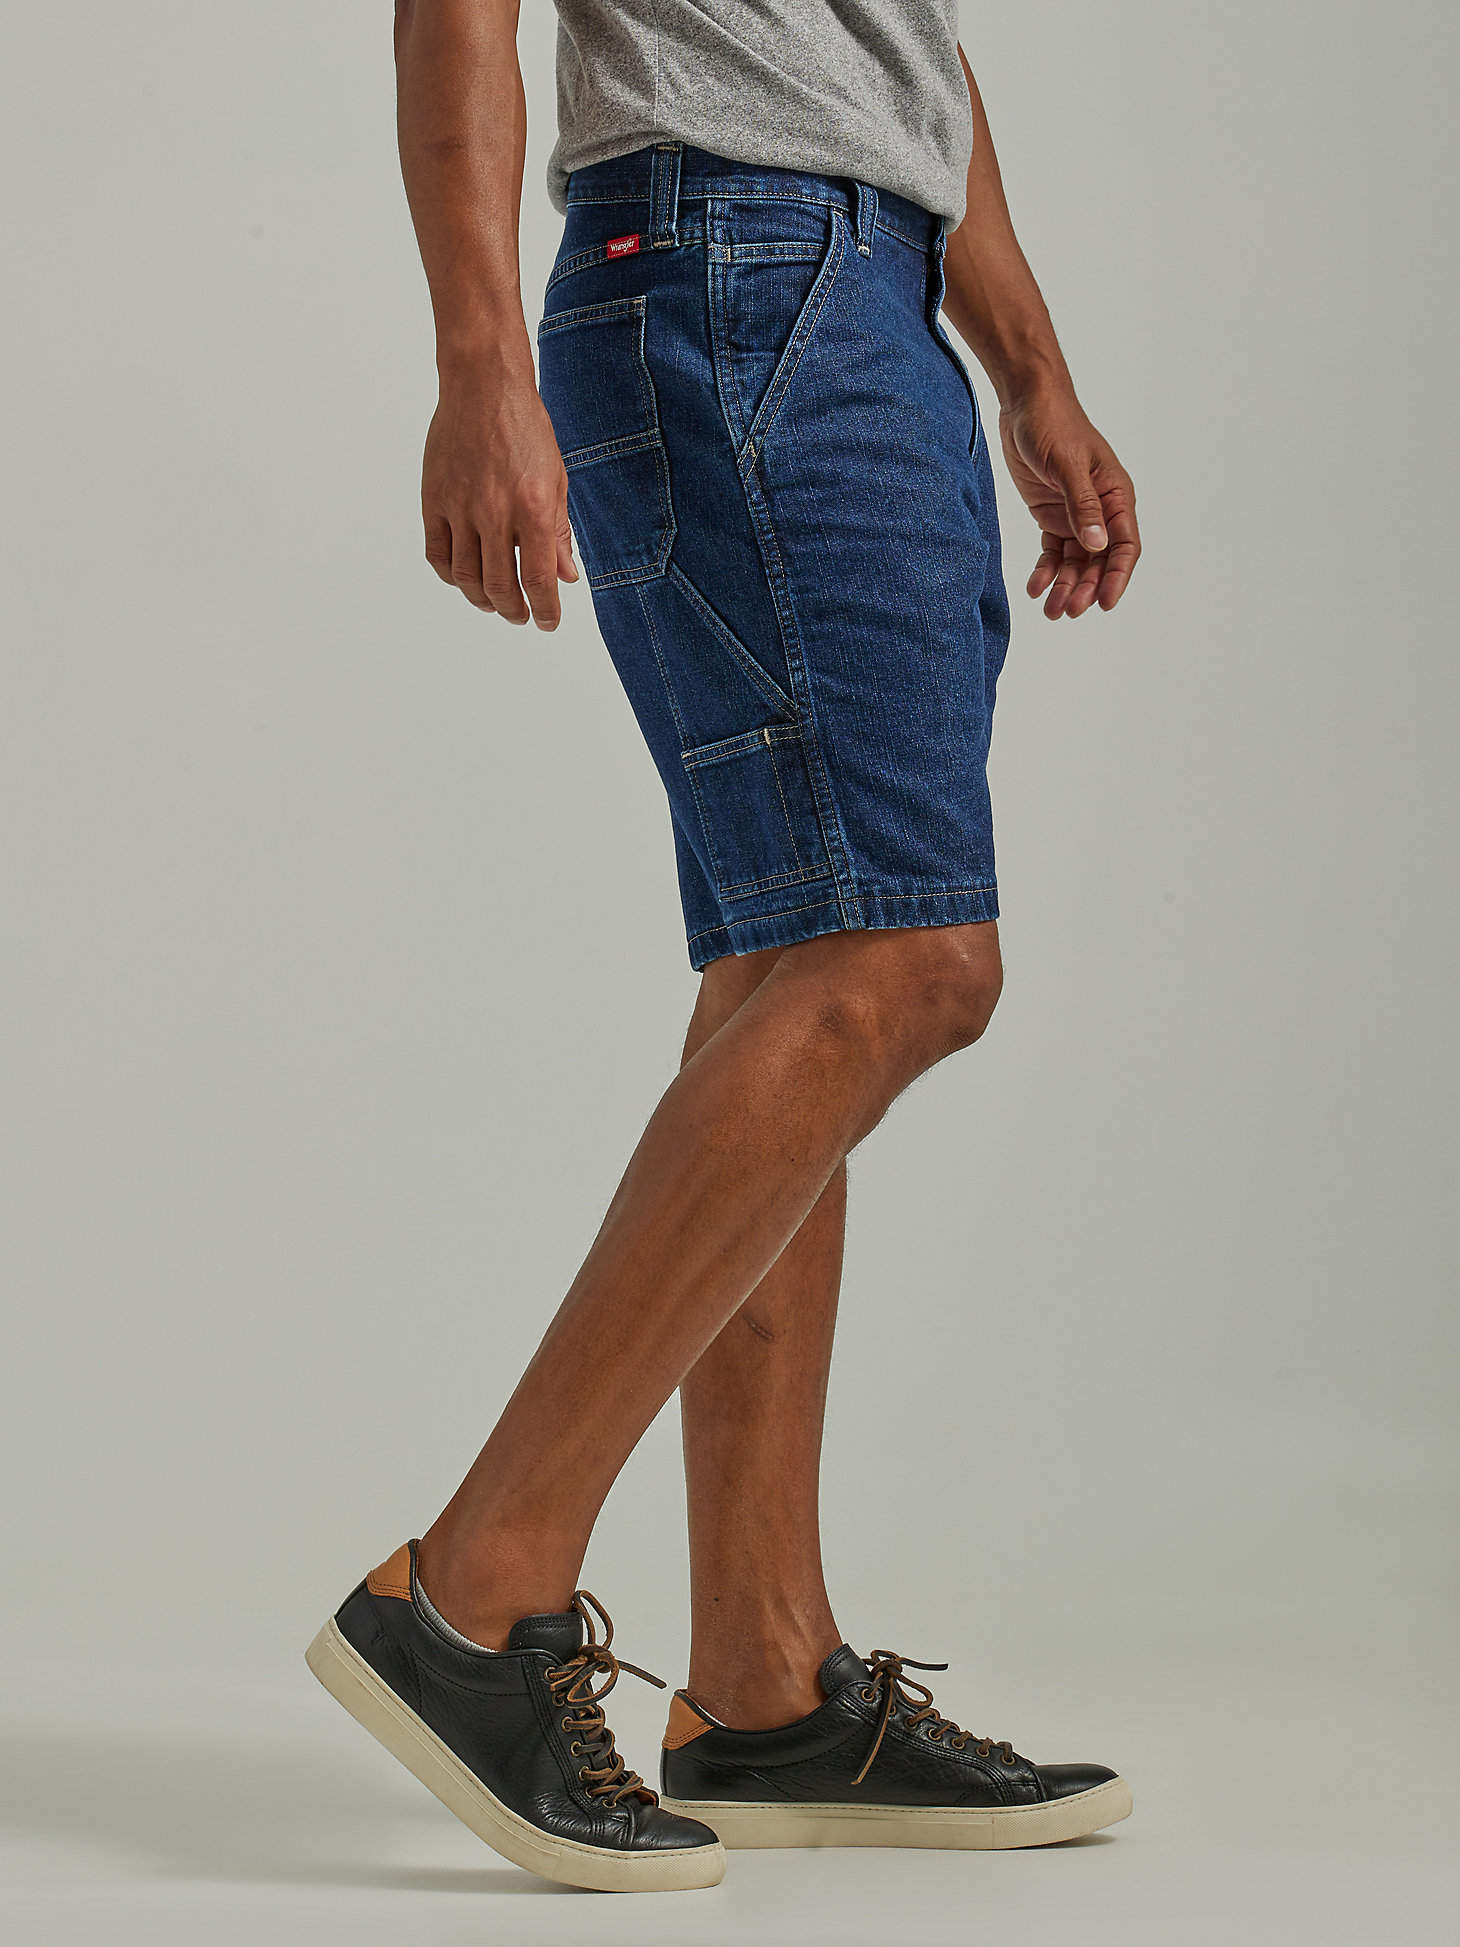 Men's Wrangler® Five Star Premium Carpenter Shorts in Dark Vintage alternative view 3